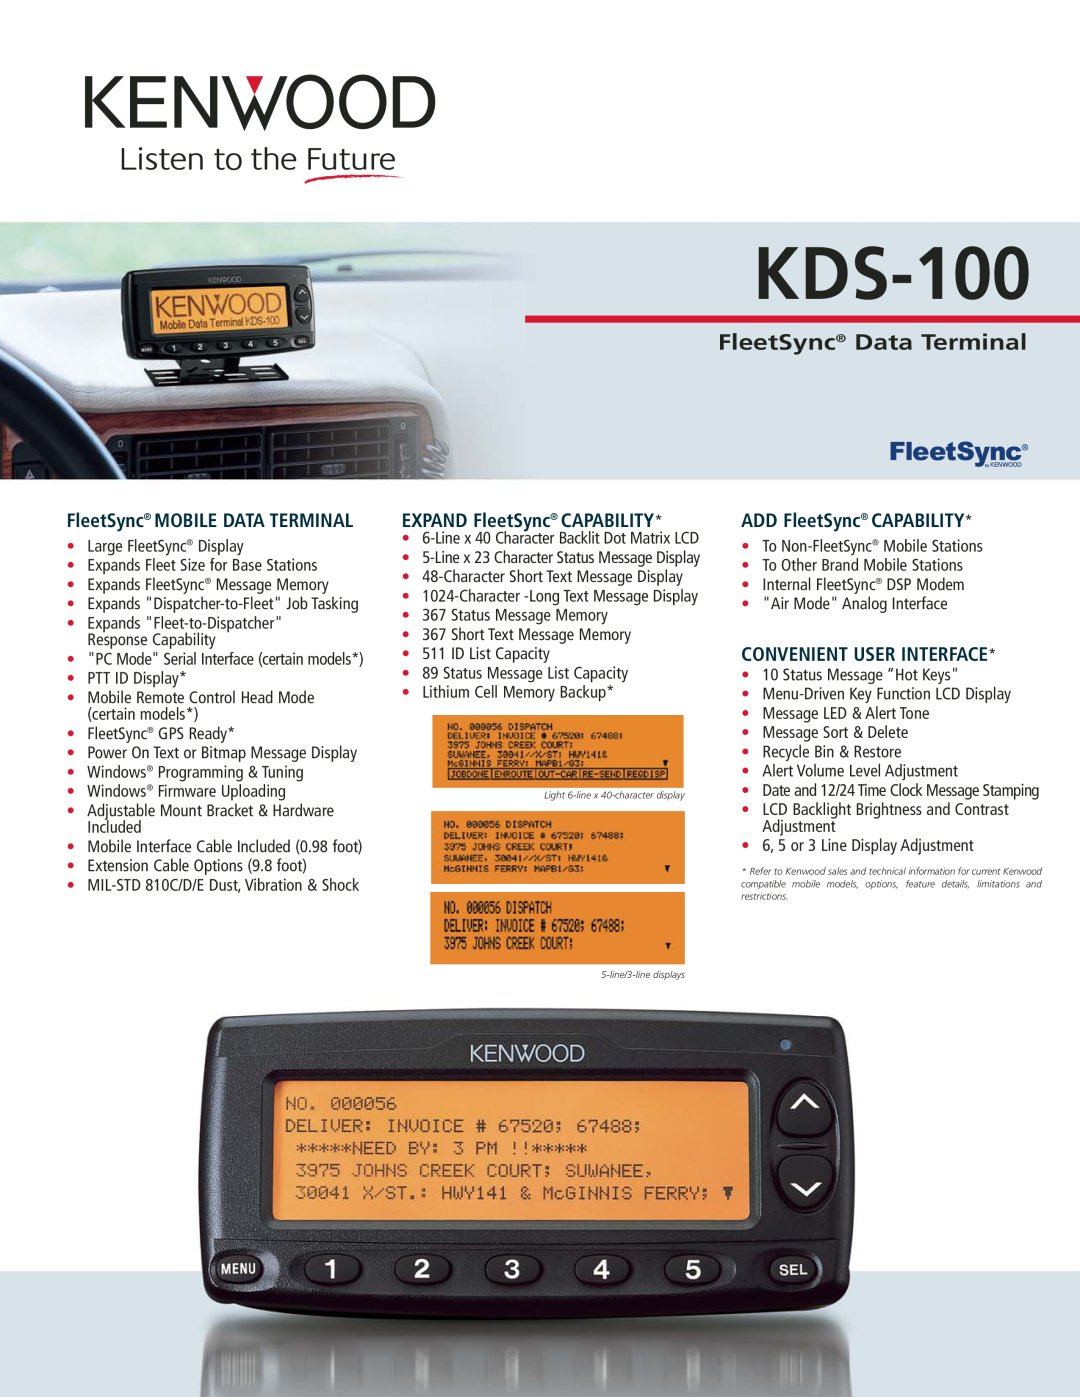 Kenwood KDS-100 manual FleetSync Data Terminal, EXPAND FleetSync CAPABILITY, ADD FleetSync CAPABILITY 